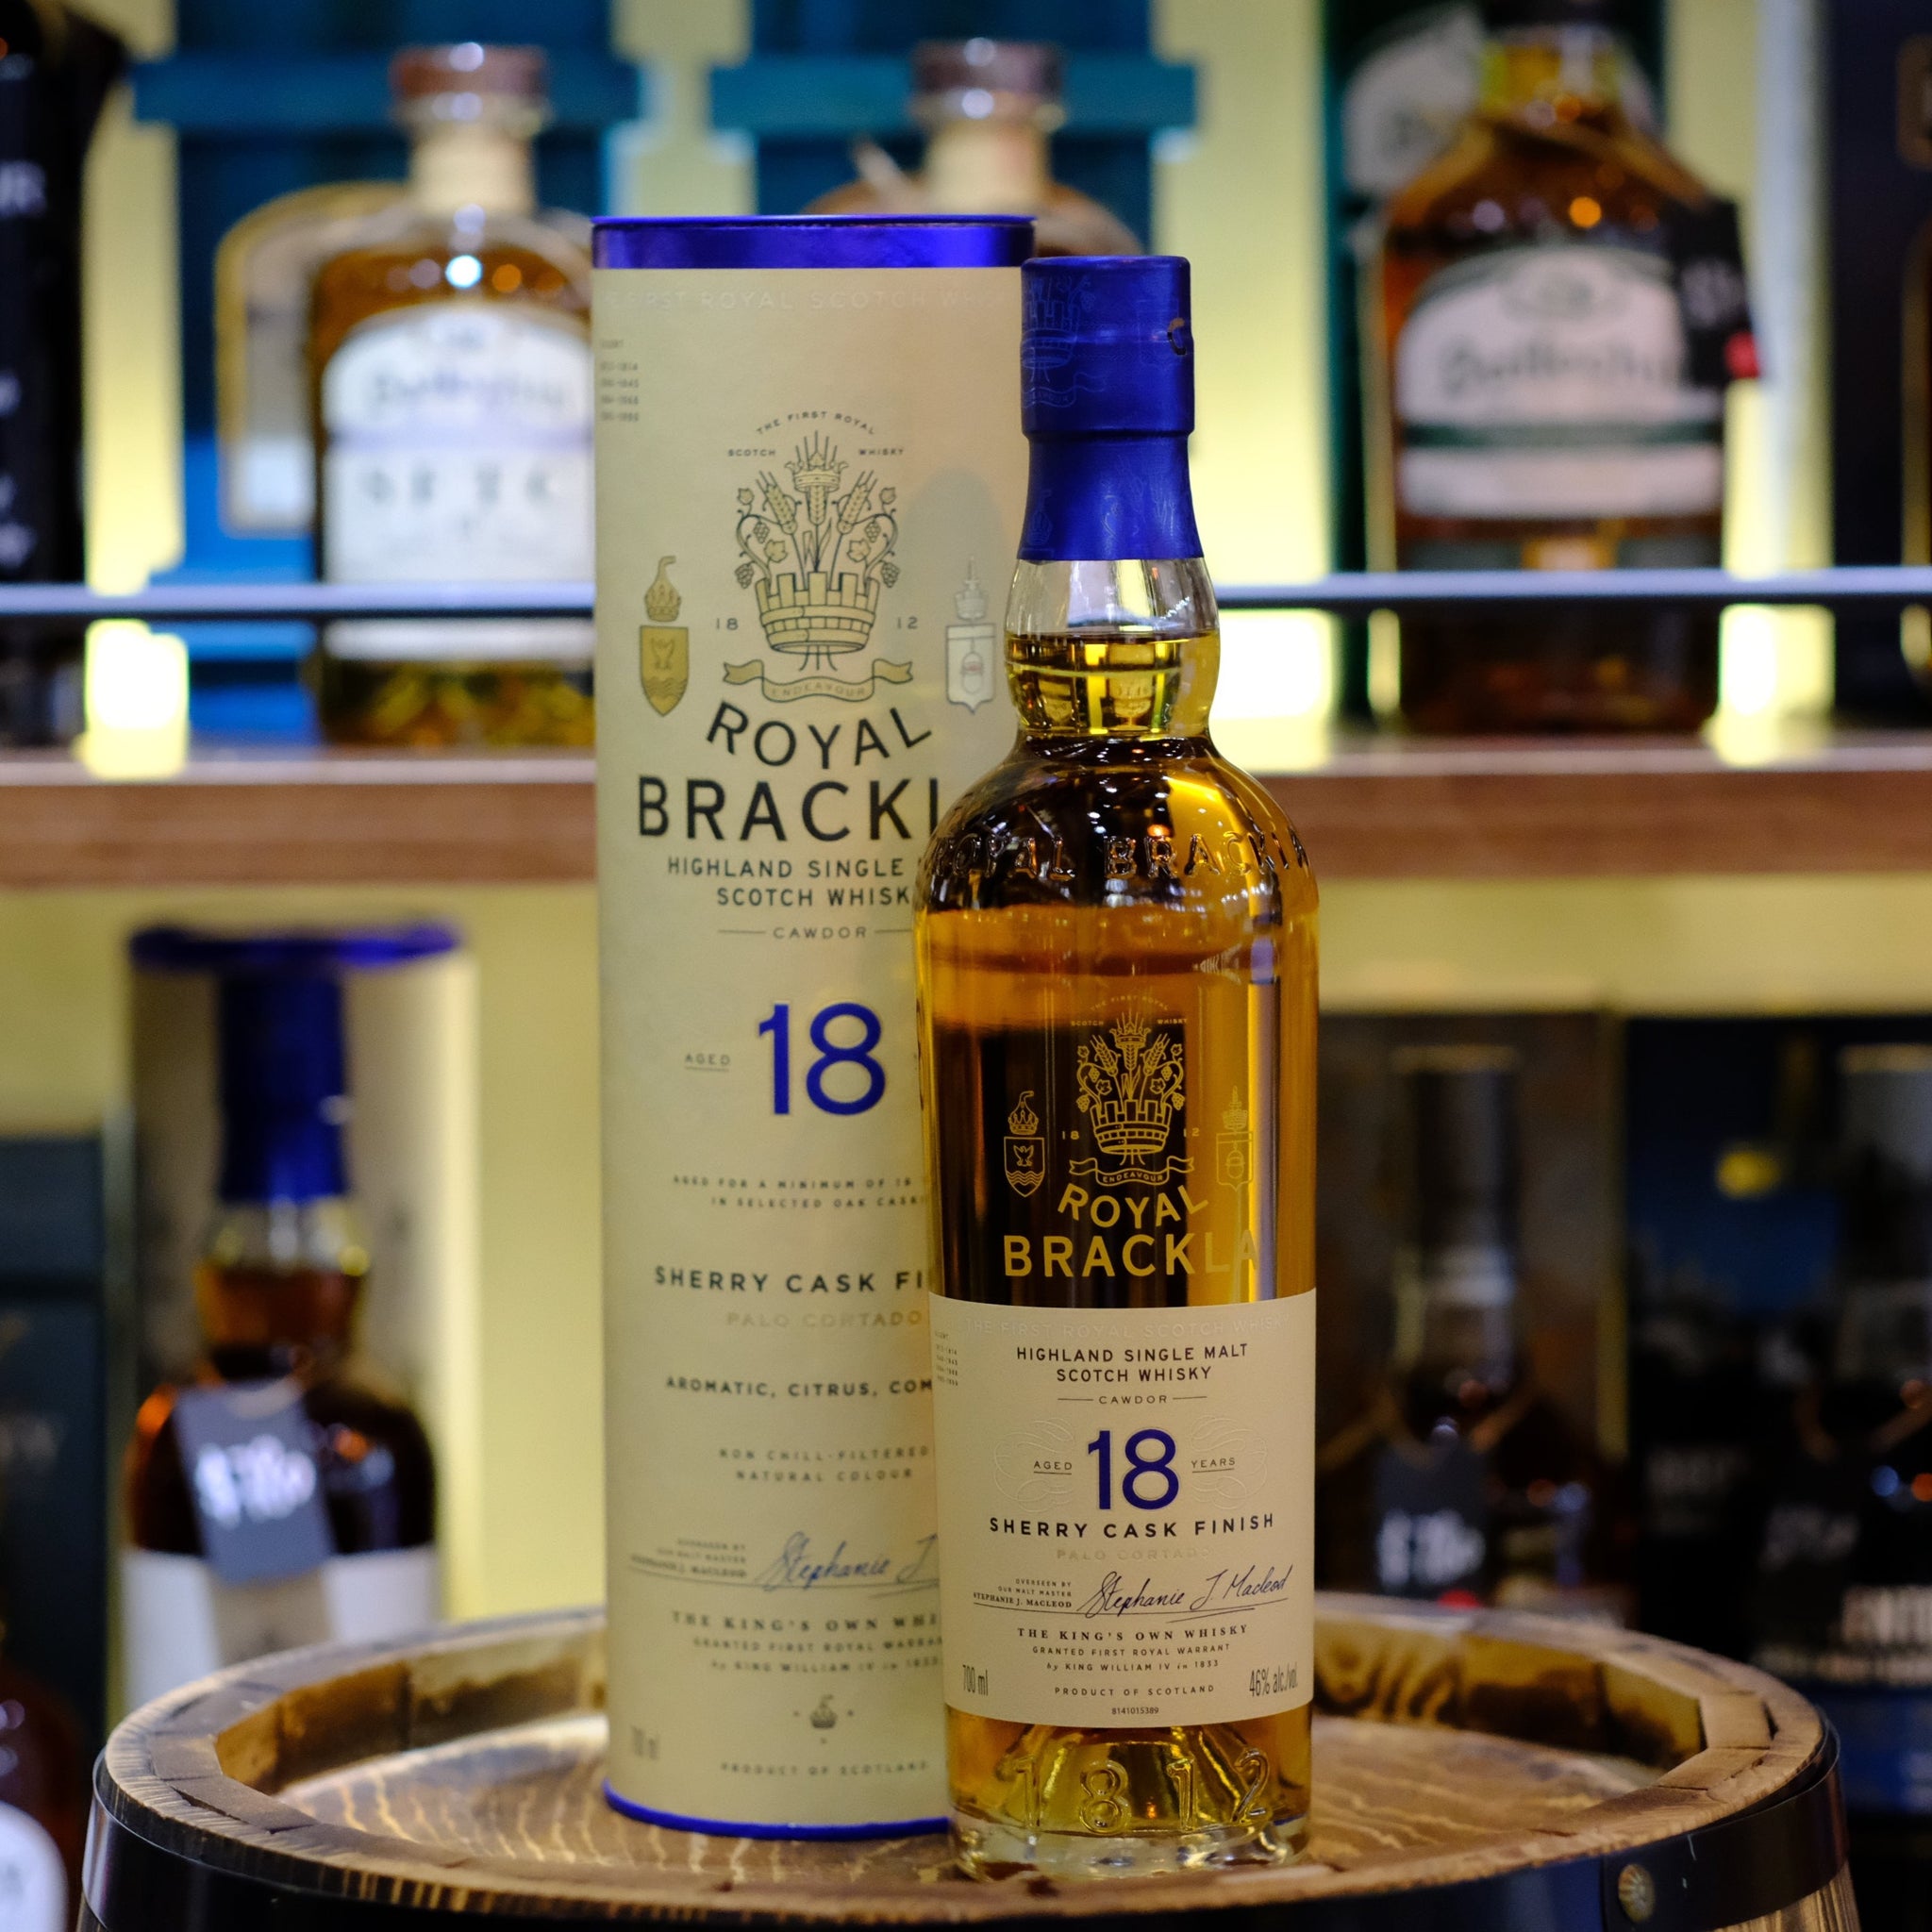 Royal Brackla 18 Year Old Sherry Cask Finish Single Malt Scotch Whisky